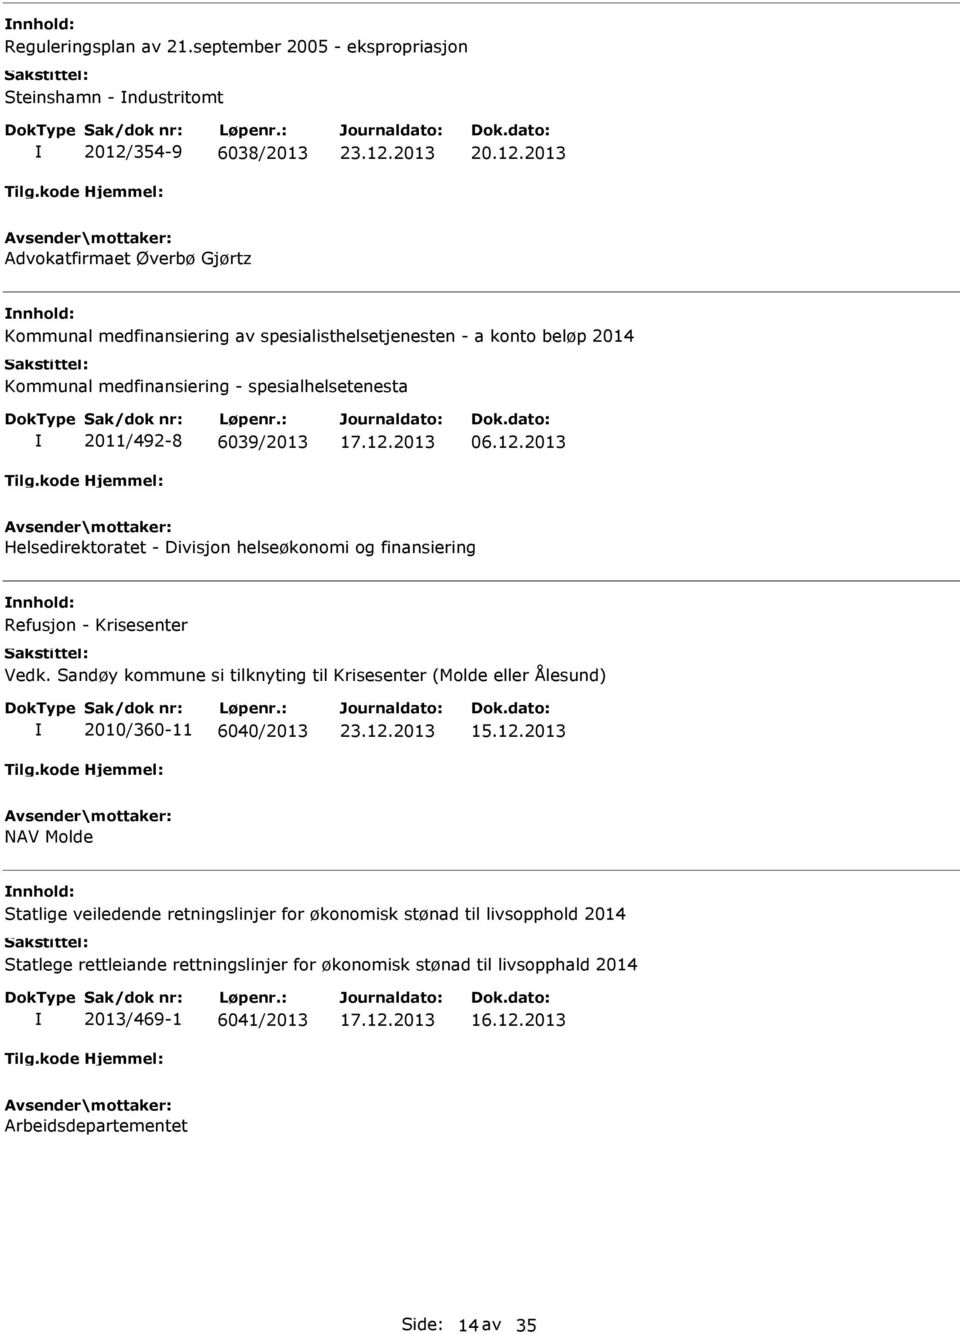 Kommunal medfinansiering - spesialhelsetenesta 2011/492-8 6039/2013 17.12.2013 06.12.2013 Helsedirektoratet - Divisjon helseøkonomi og finansiering Refusjon - Krisesenter Vedk.